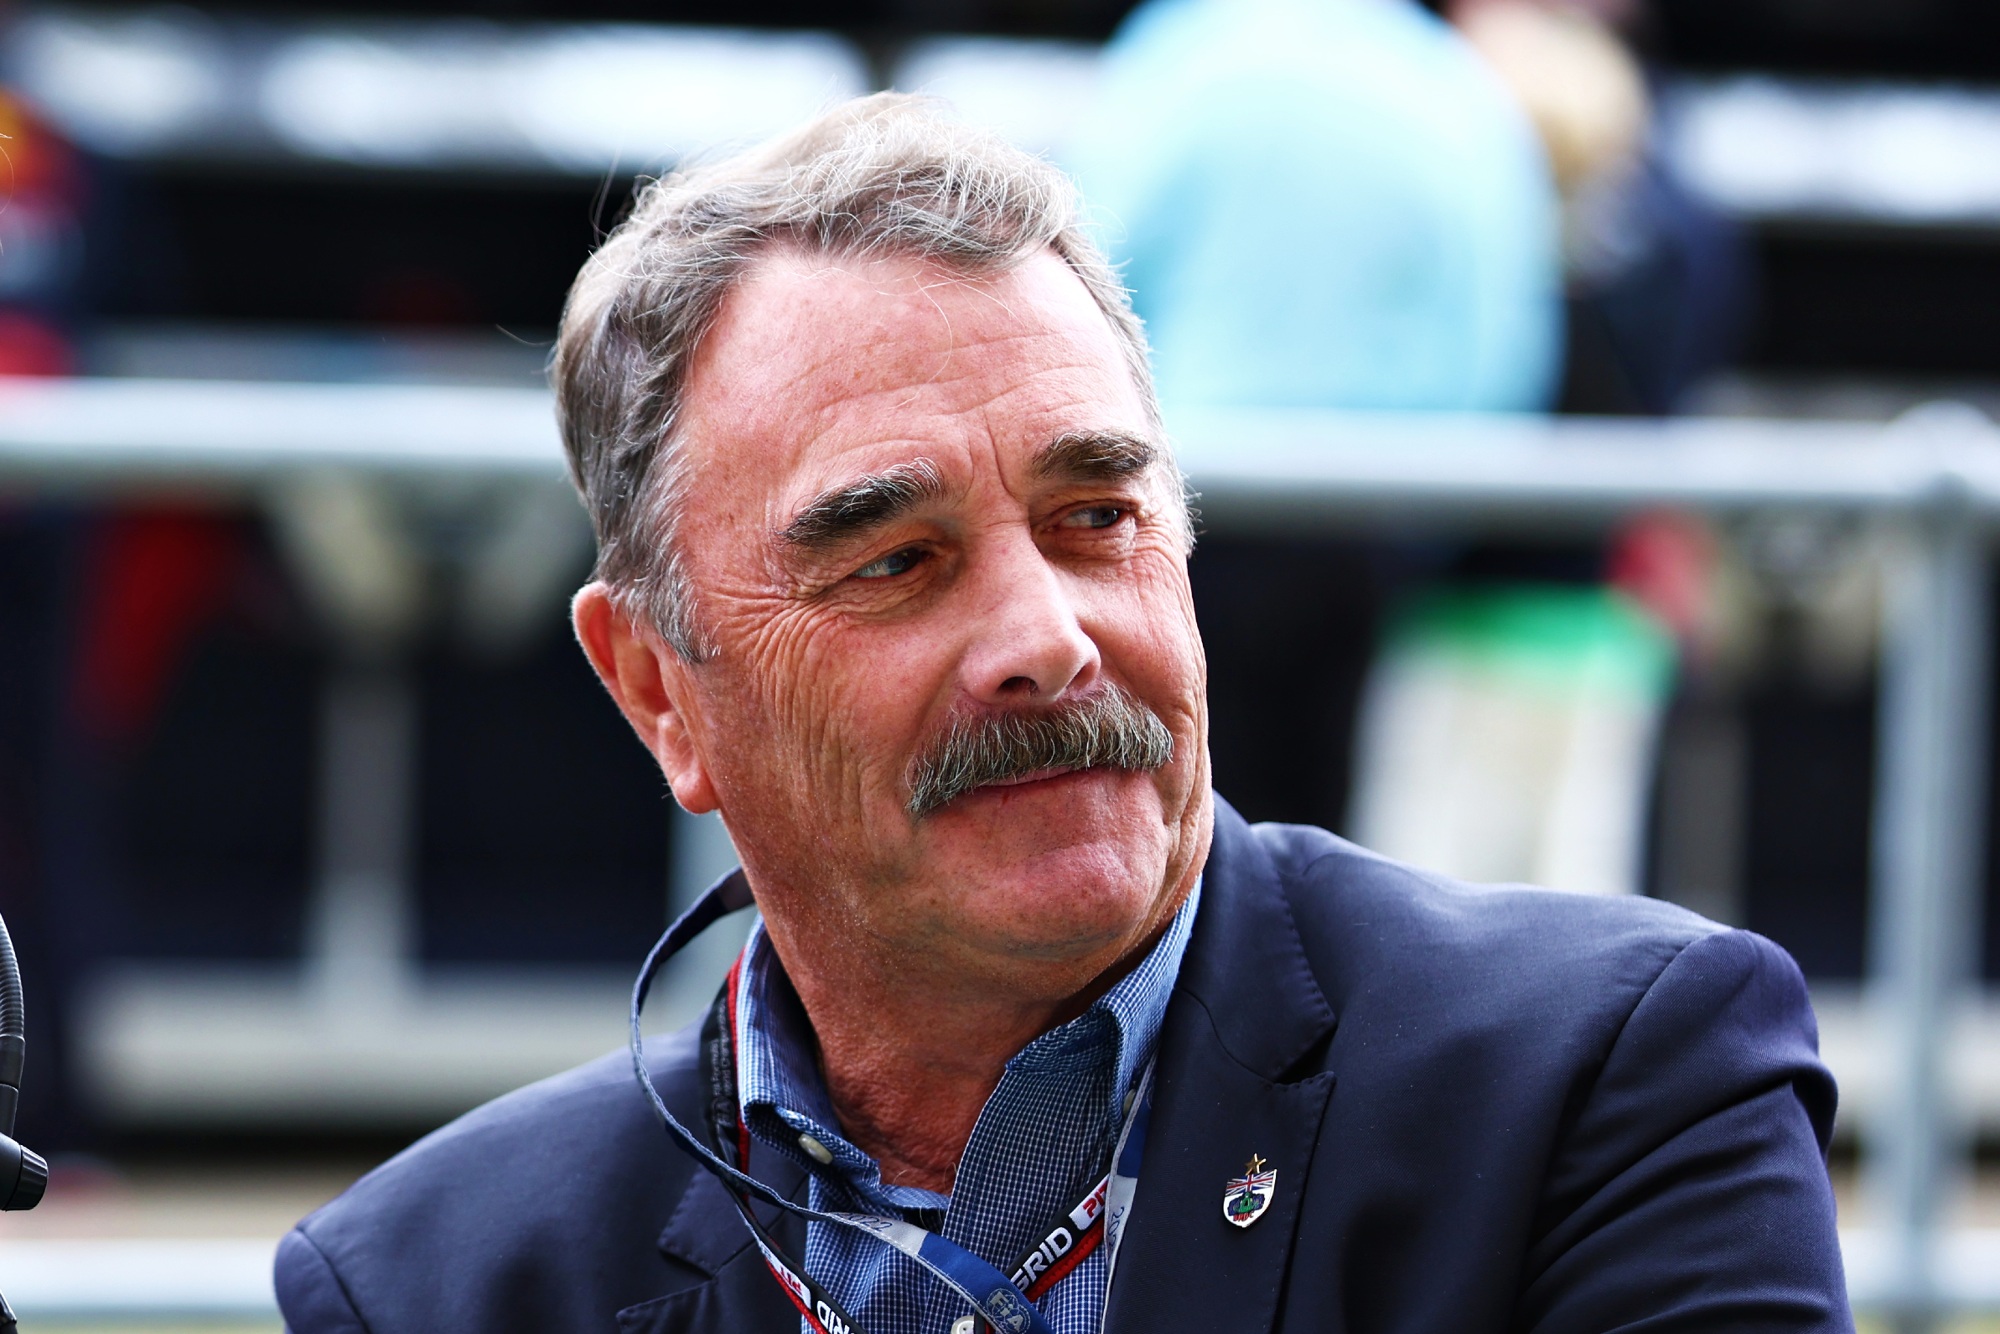 Nigel Mansell, de bigode e terno, olhando para o lado direito